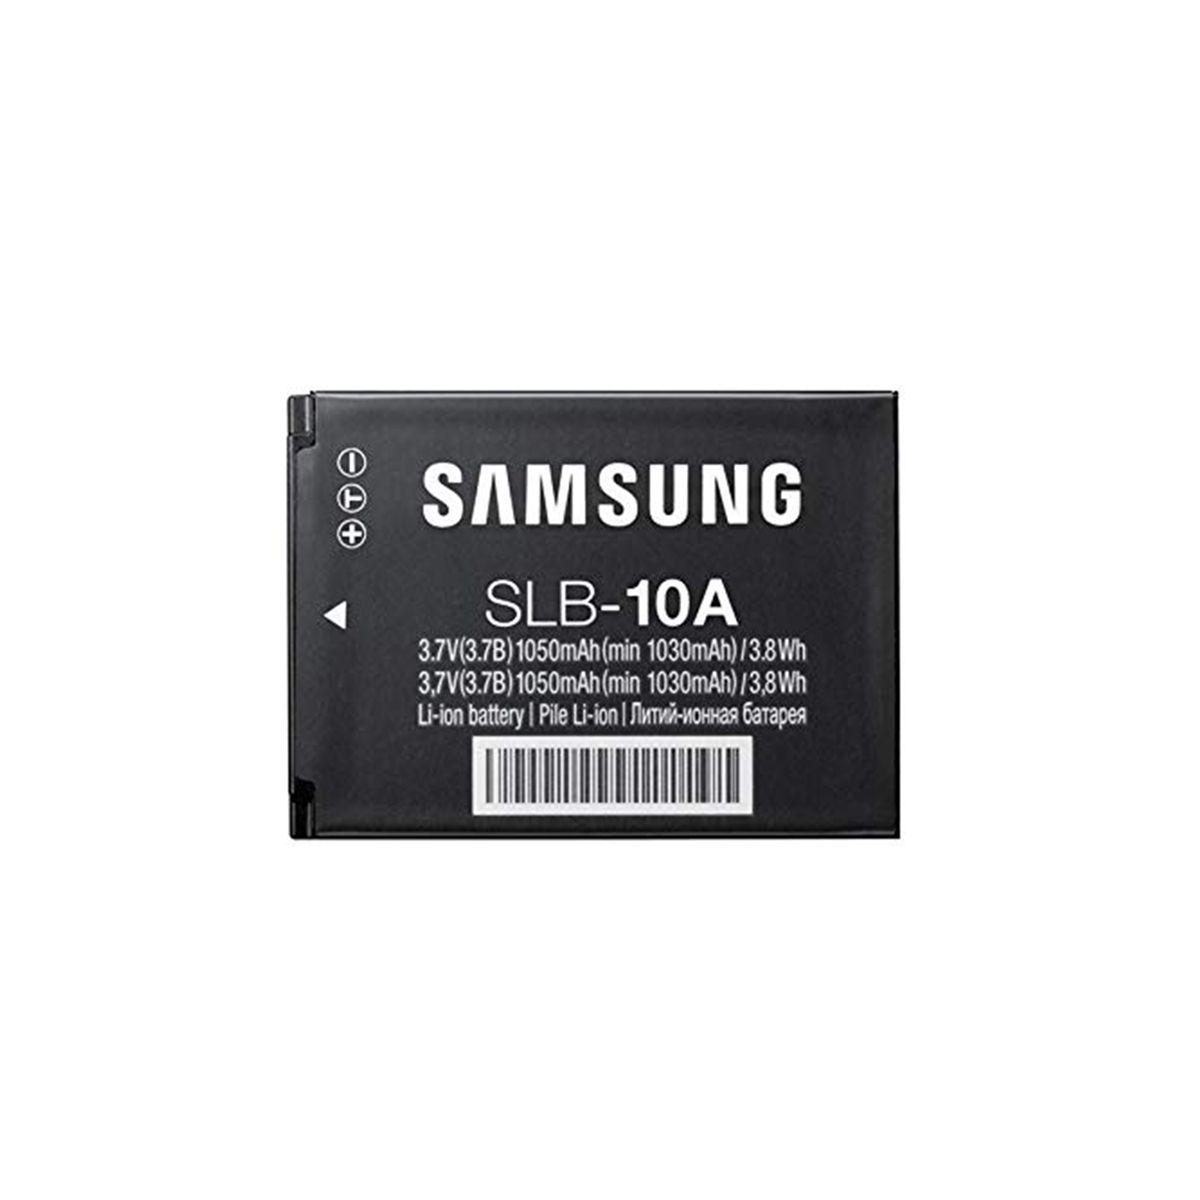 Батарейки samsung купить. Samsung SLB-10a. Аккумулятор Samsung SLB-10a. Samsung a10 аккумулятор. SLB-10a аккумулятор.